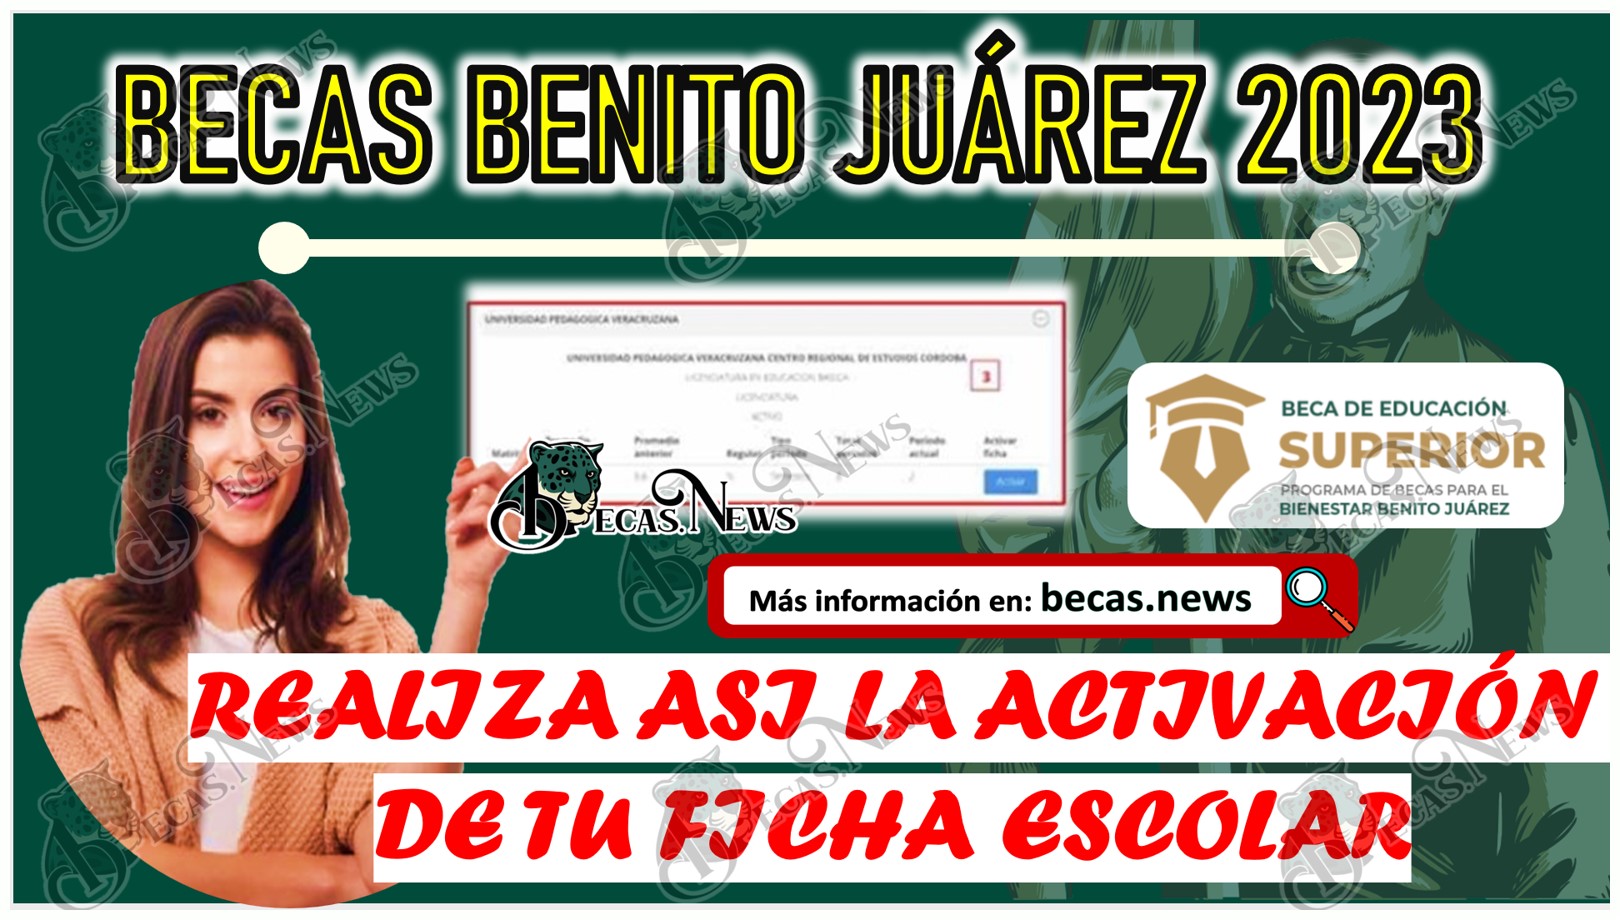 Becas Benito Juárez 2023 | ACTIVA así tu ficha escolar y solicita la Beca de Educación Superior